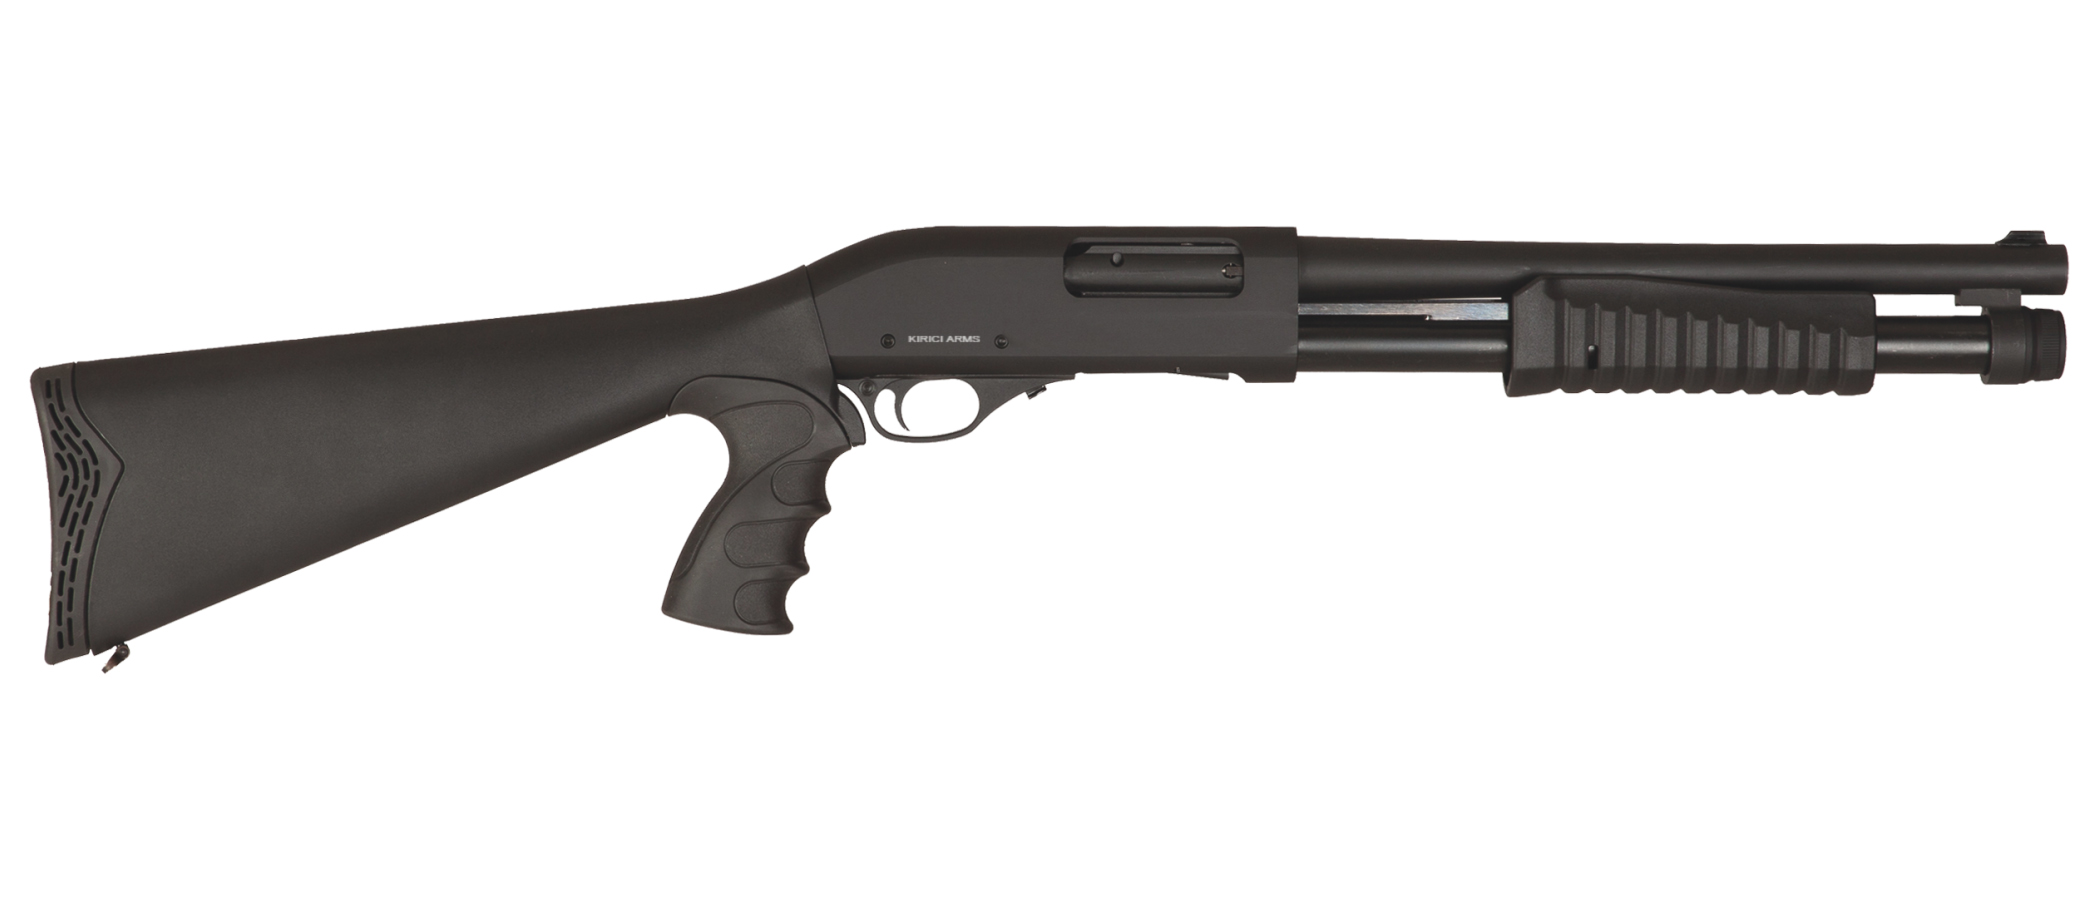 Mossberg 500 Persuader 12 Gauge Pistol Grip Shotgun With Add